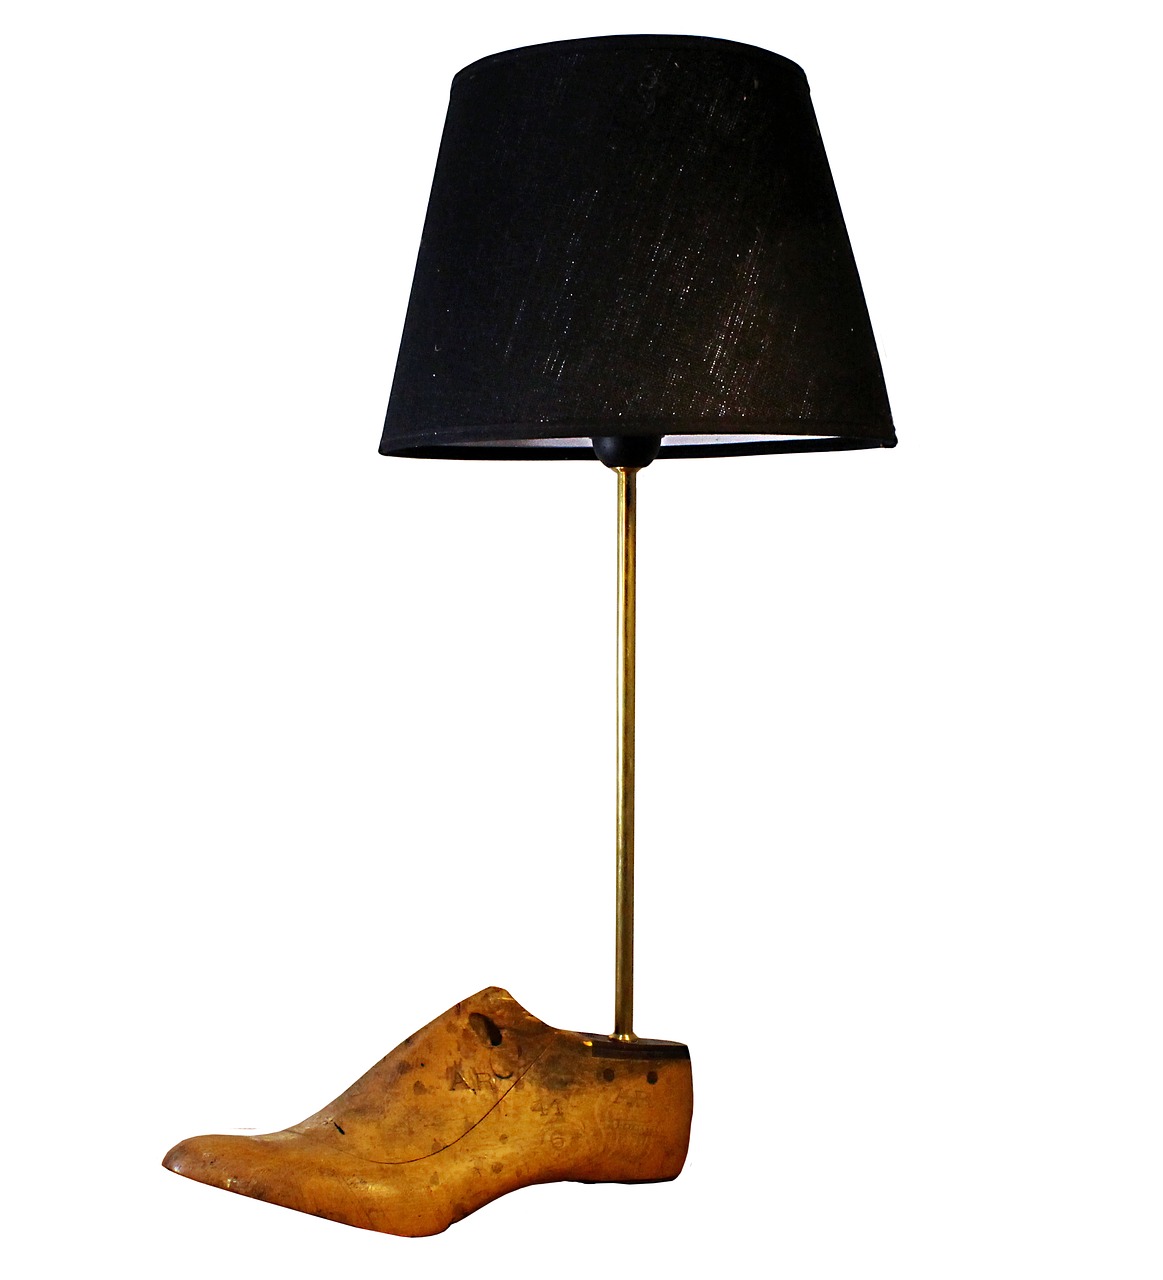 lamp design lamp cobbler free photo